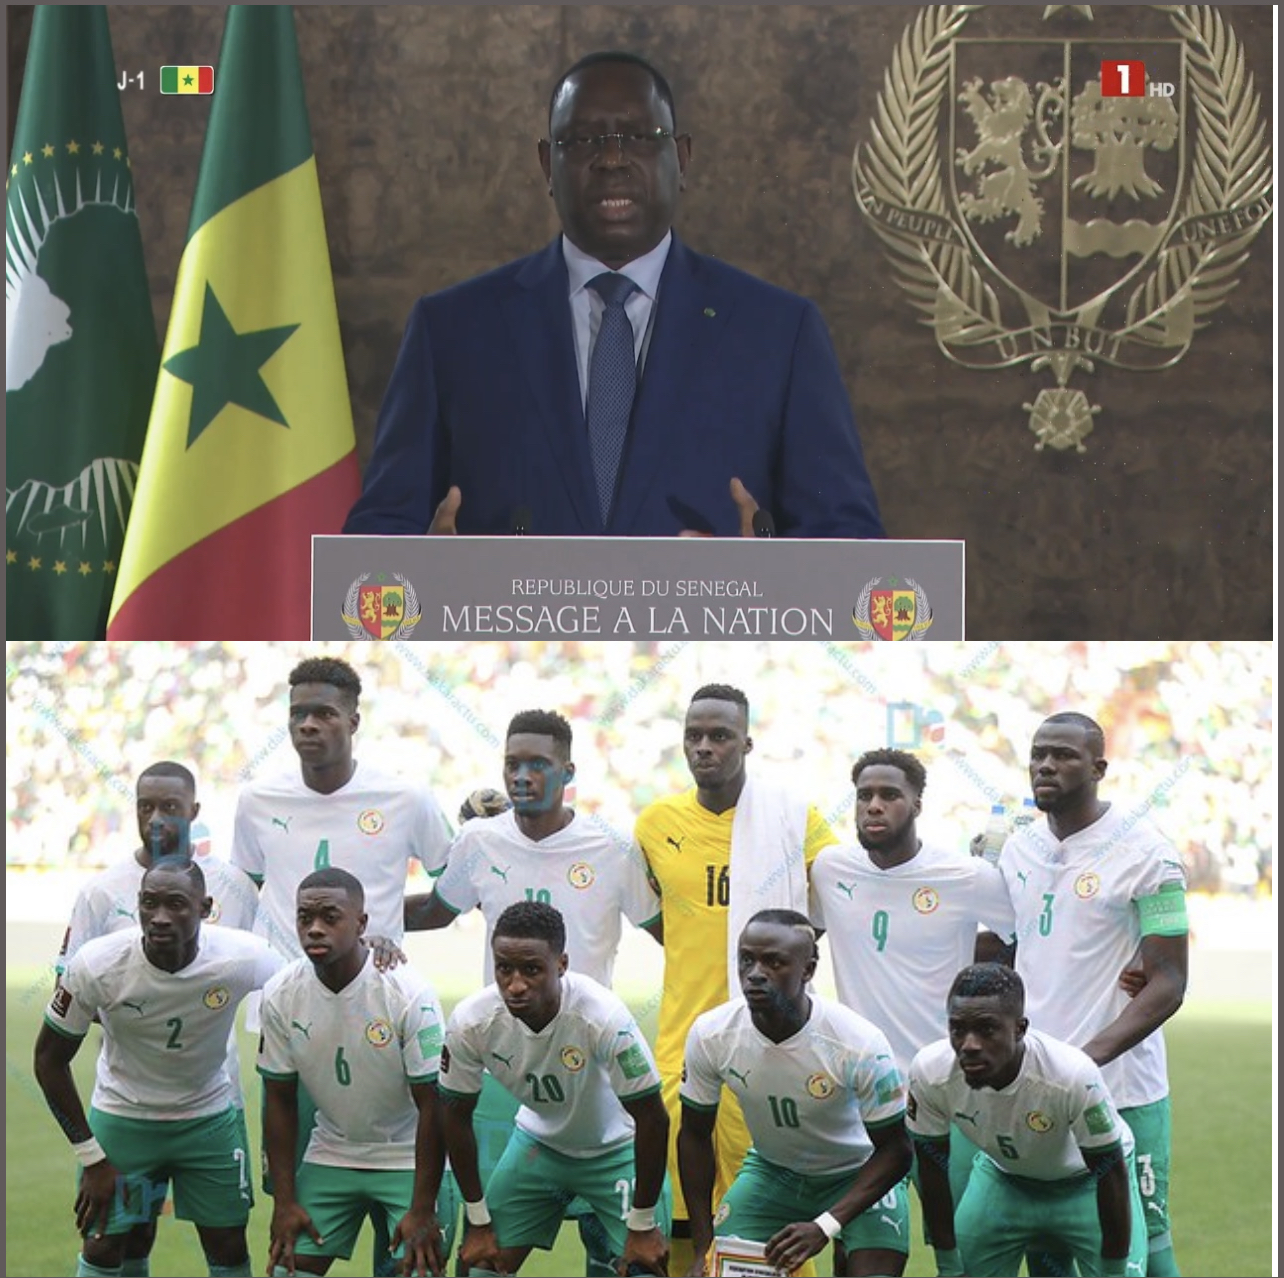 Le président Macky Sall aux Lions du football : « L’Etat sera à vos côtés pour vous apporter tout le soutien nécessaire »